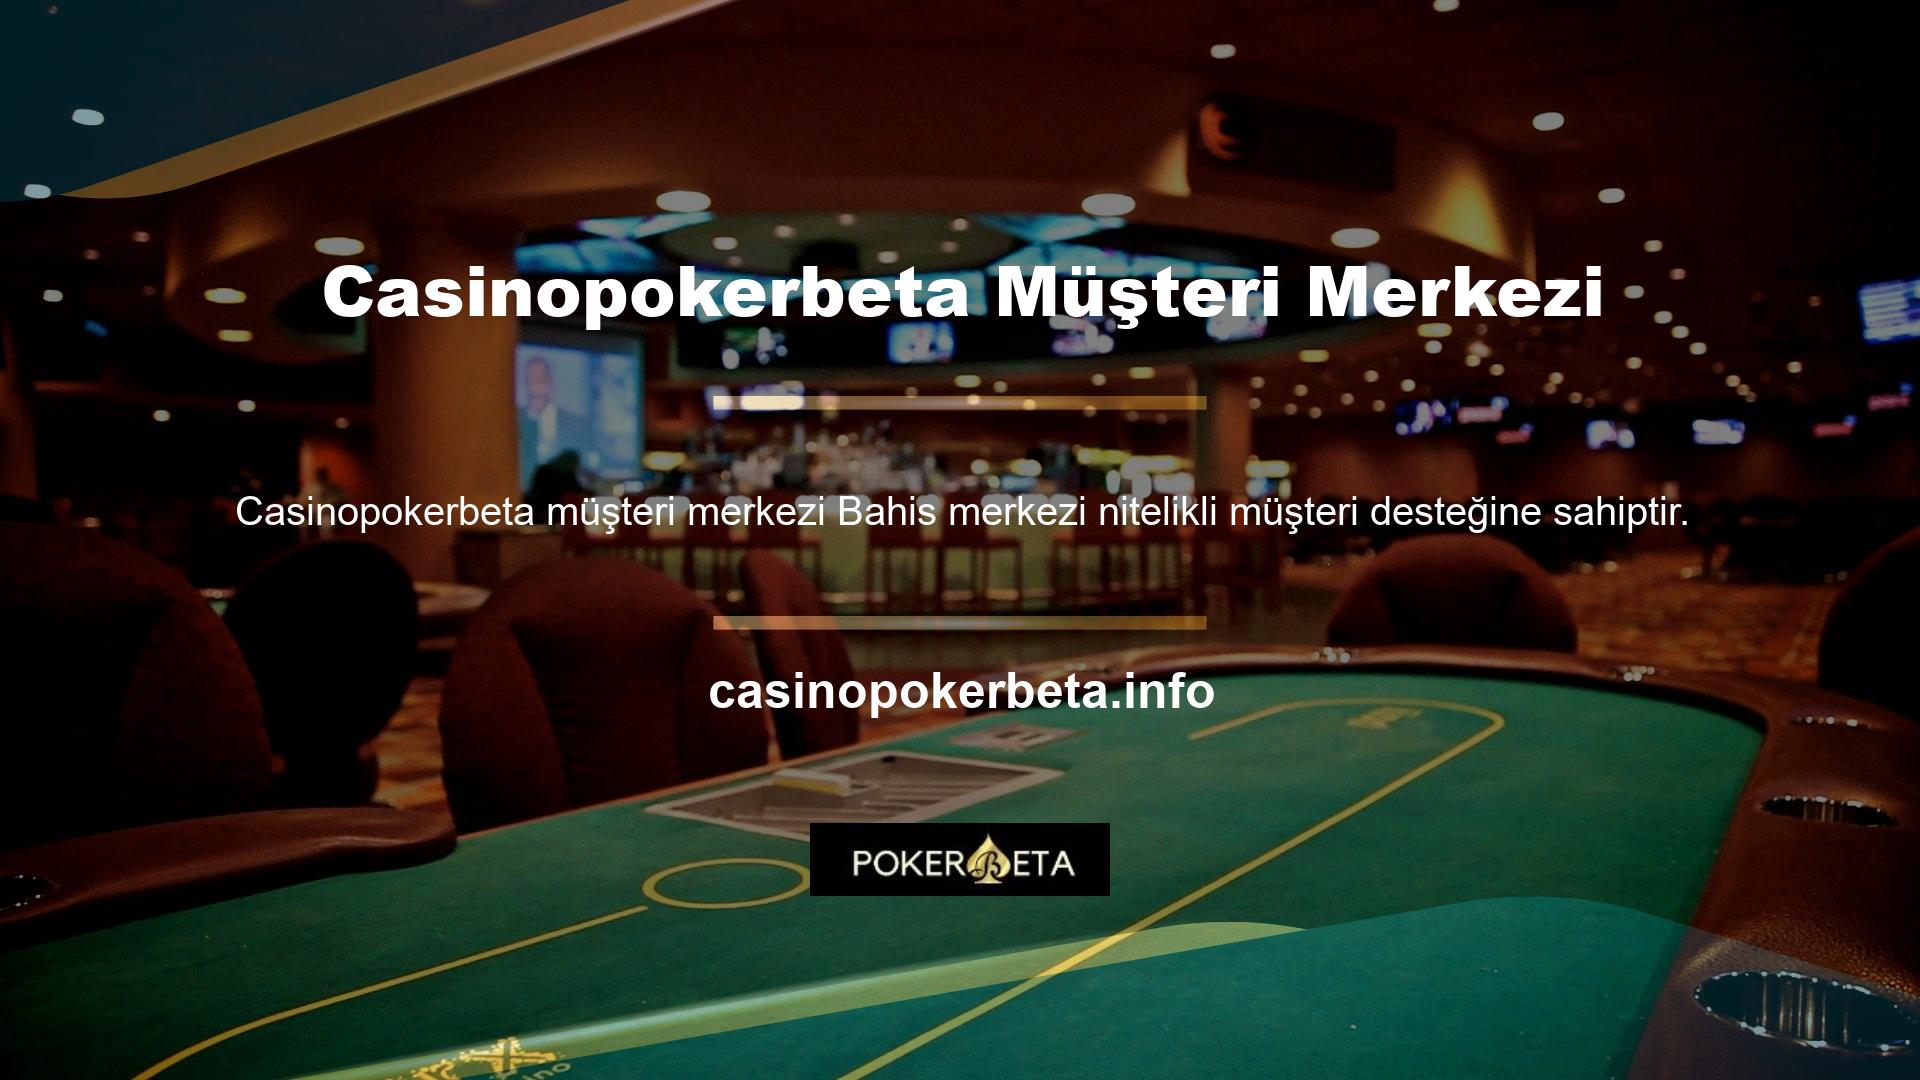 Casinopokerbeta, üye olurken başarısızlıklarla dolu bir hayat yaşayan üyeler için bir yardım merkezi oluşturan bir sitedir